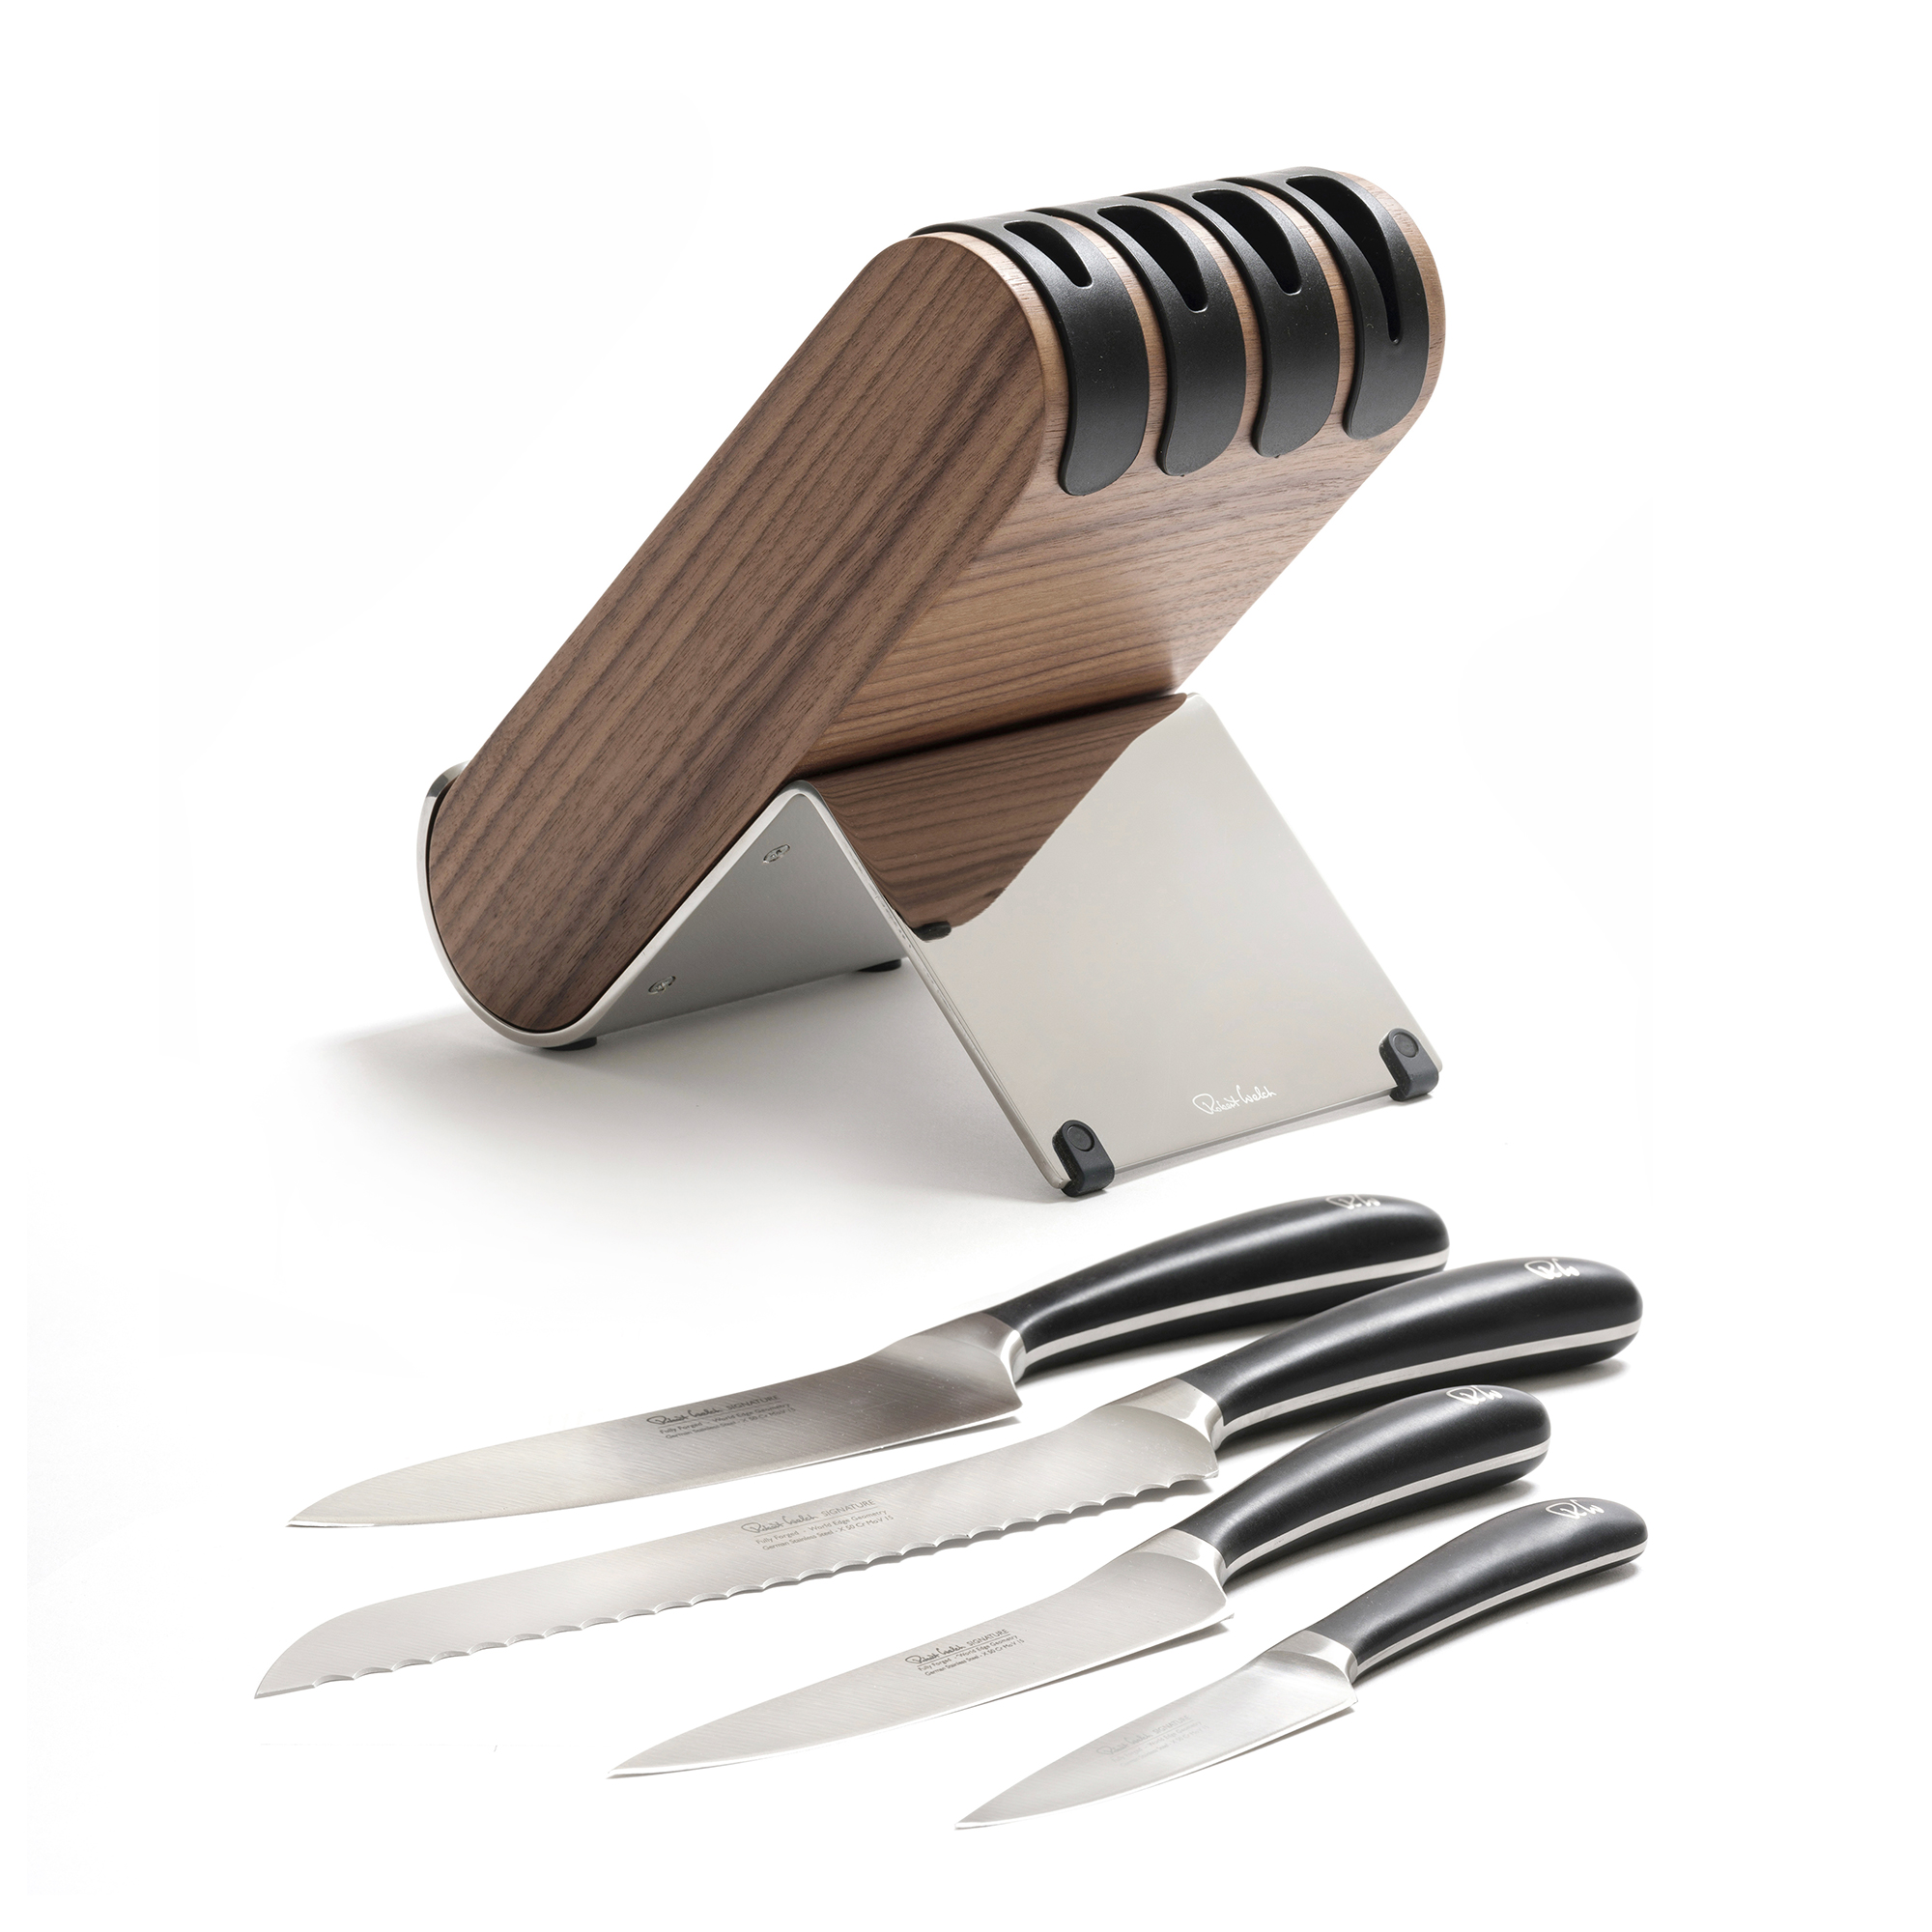 Набор из 4 кухонных ножей в подставке (орех), ROBERT WELCH, серия Signature knife